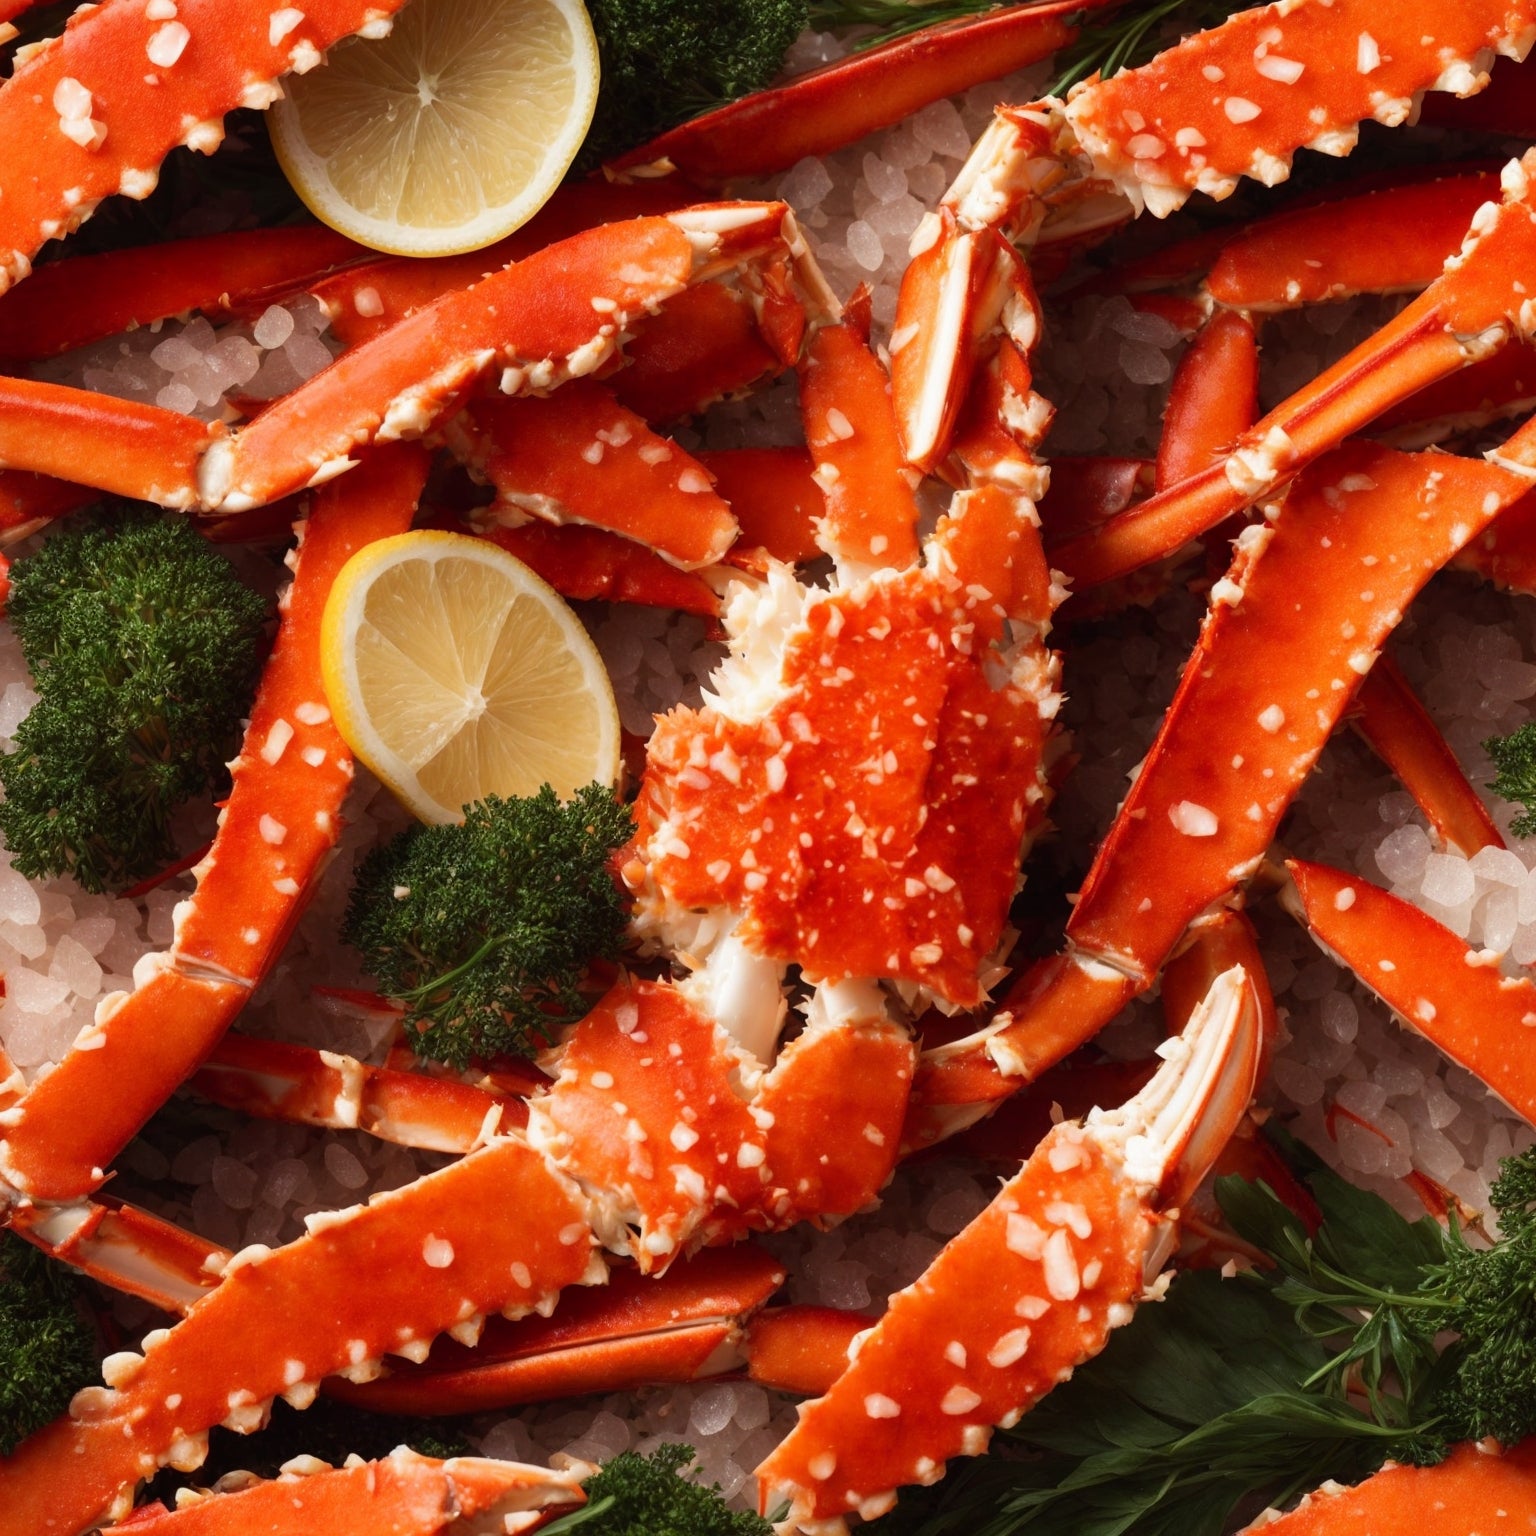 The Pinnacle of Crab: Global Seafoods' Alaskan King Crab